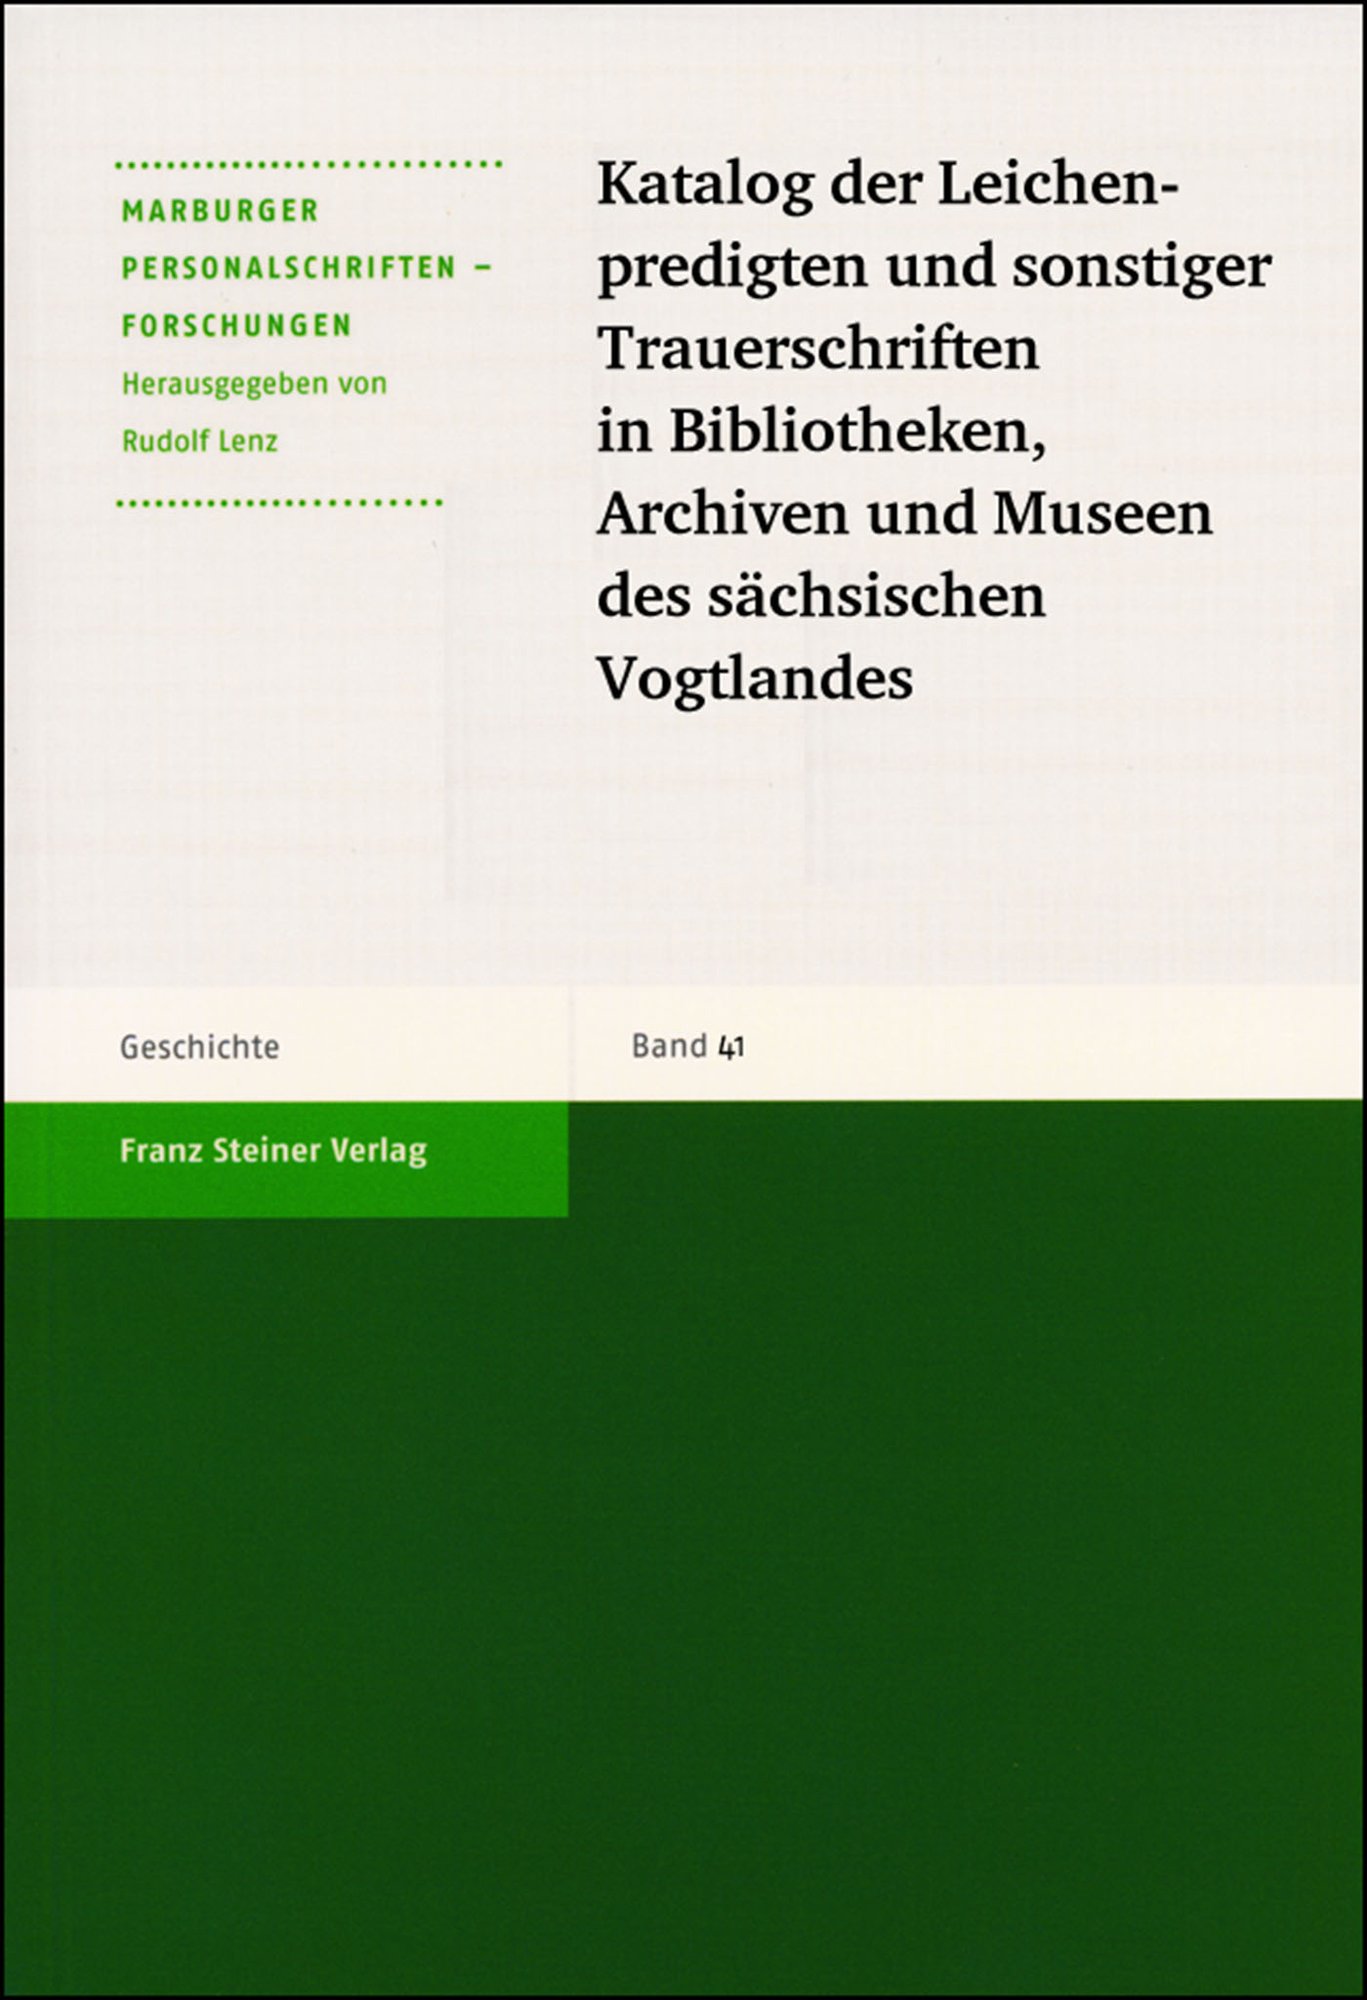 Katalog der Leichenpredigten und sonstiger Trauerschriften in Bibliotheken, Archiven und Museen des sächsischen Vogtlandes